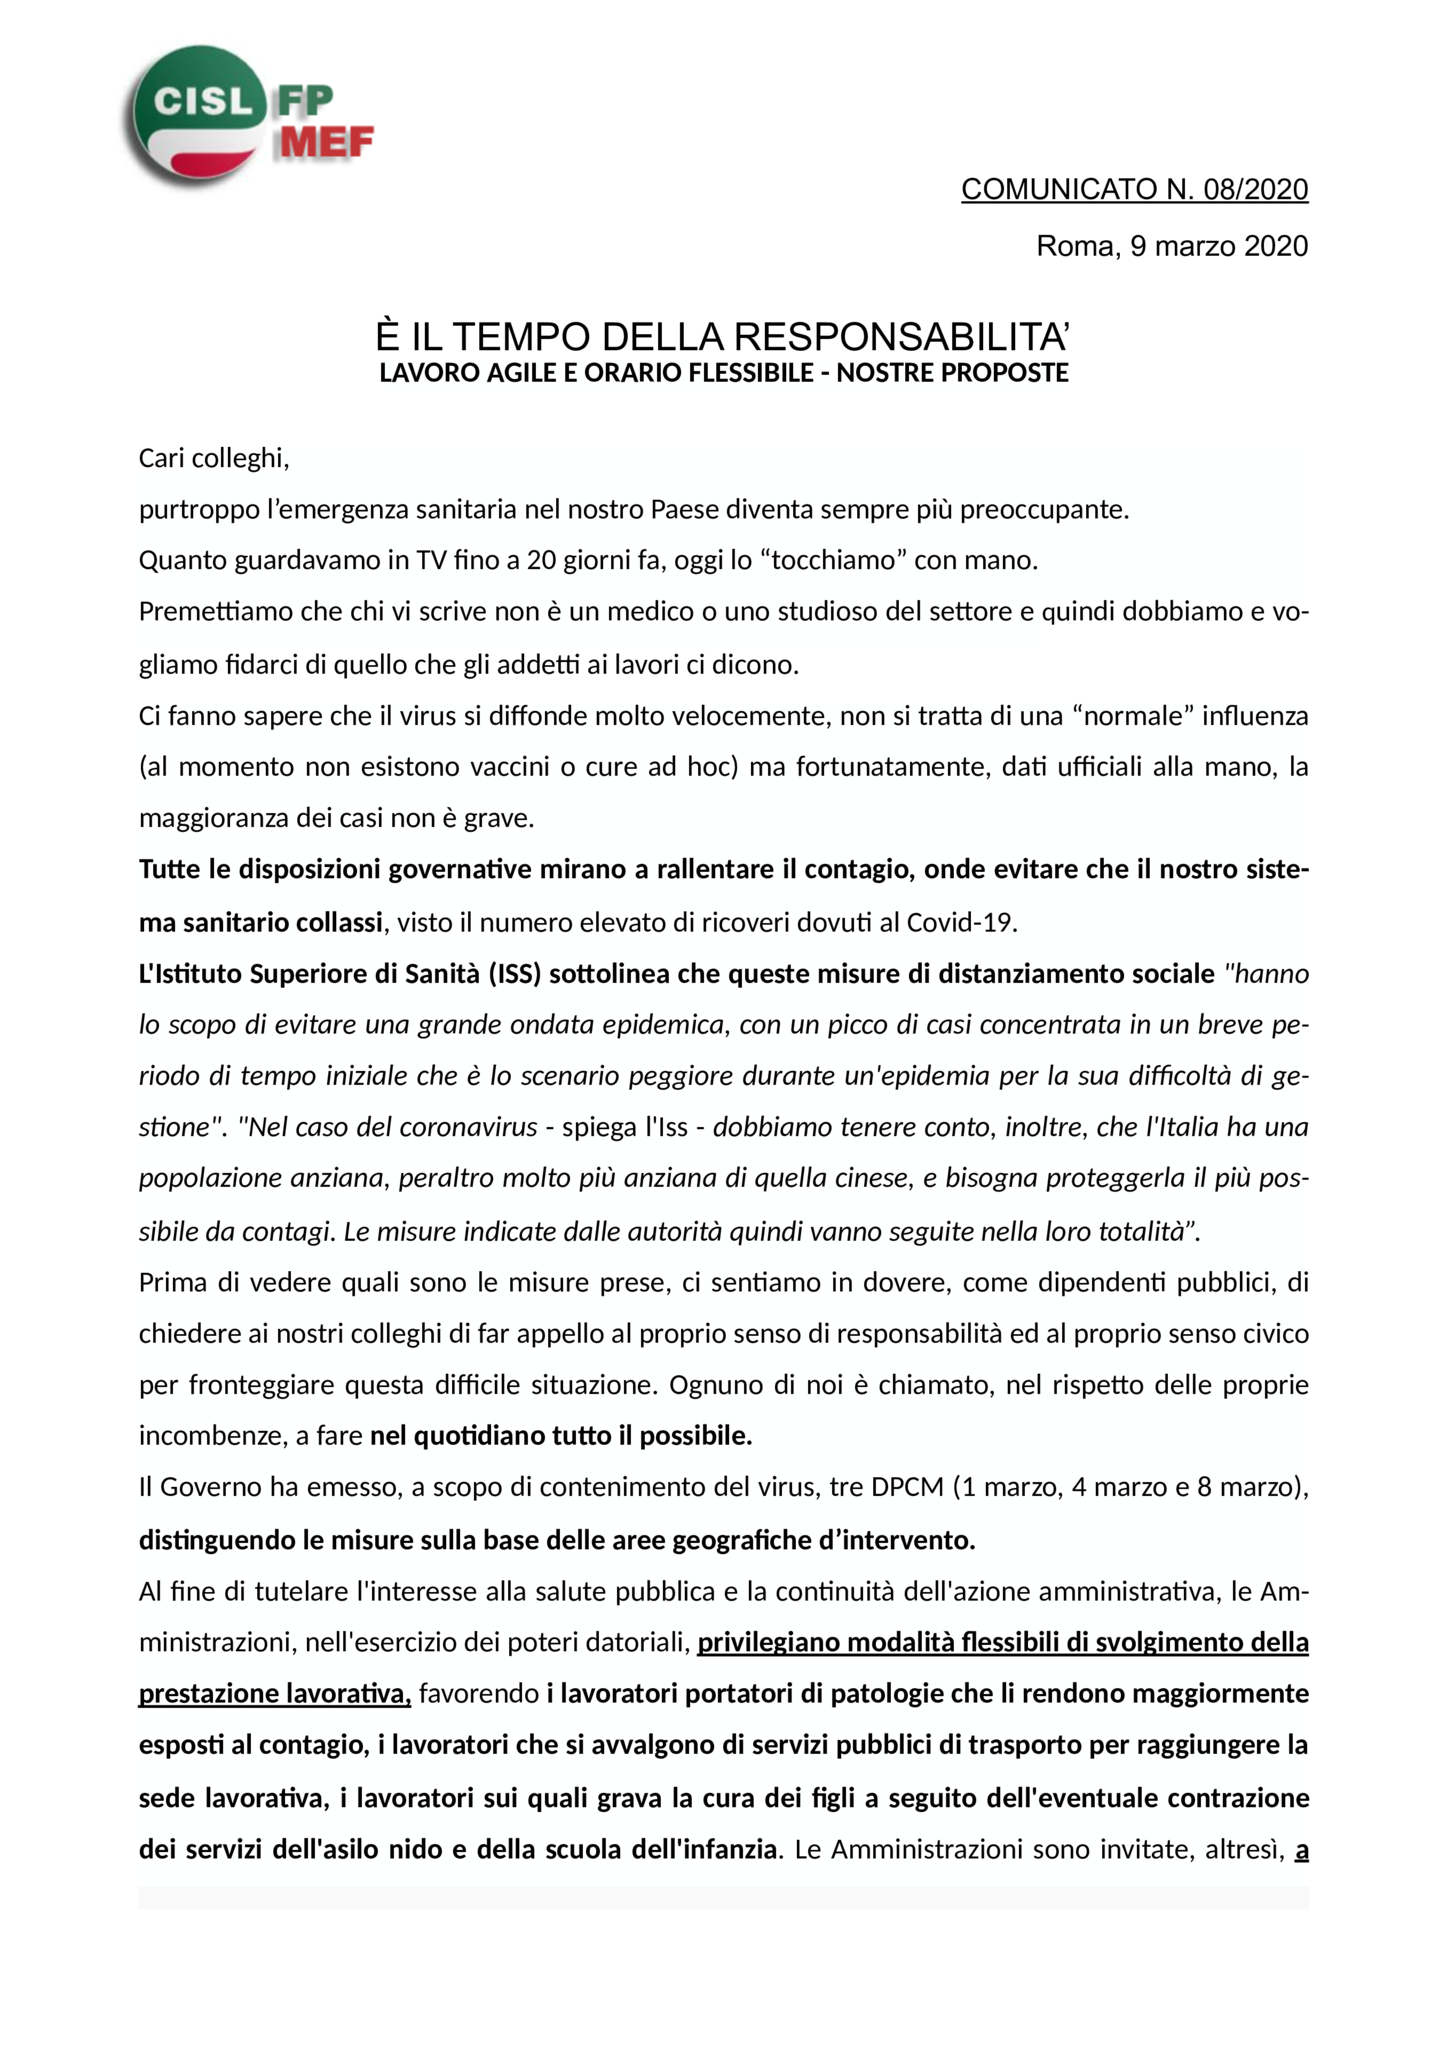 thumbnail of 8-20-COMUNICATO-E-IL-TEMPO-DELLA-RESPONSABILITA-Lavoro-agile-e-orario-flessibile-le-nostre-proposte